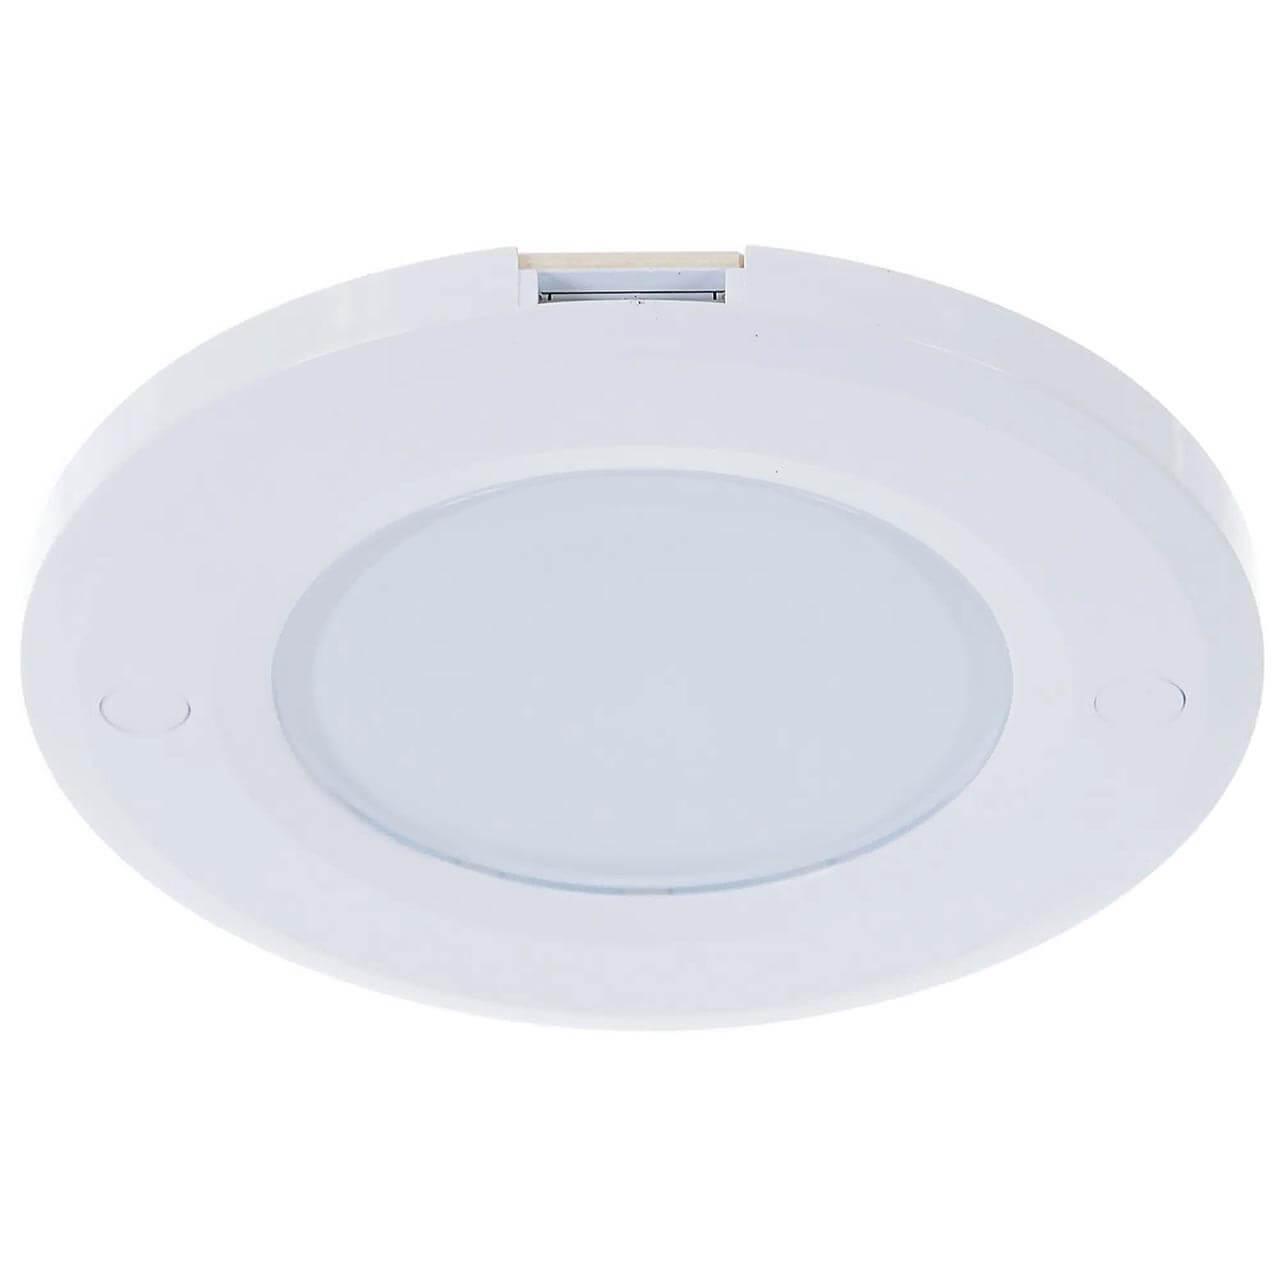 Мебельный светодиодный светильник Uniel ULM-F40-6W/4200K/Dim Sensor IP20 White UL-00002887 мебельный светодиодный светильник uniel ulm f42 3w 4200k sensor ip20 white ul 00002889